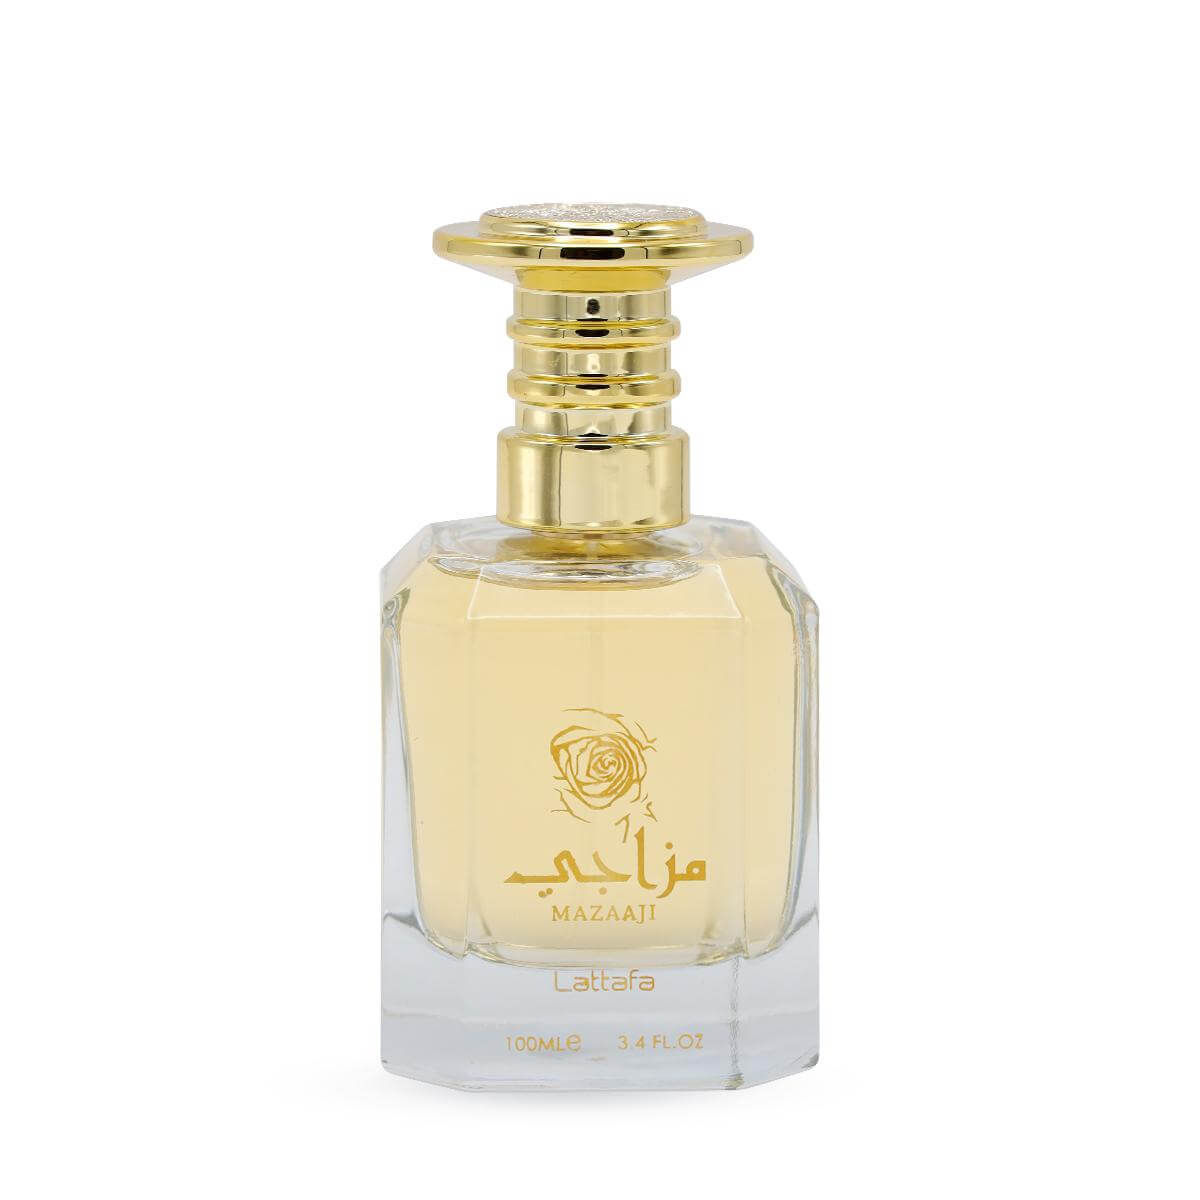 Mazaaji Perfume 100Ml Perfume / Eau De Parfum By Lattafa